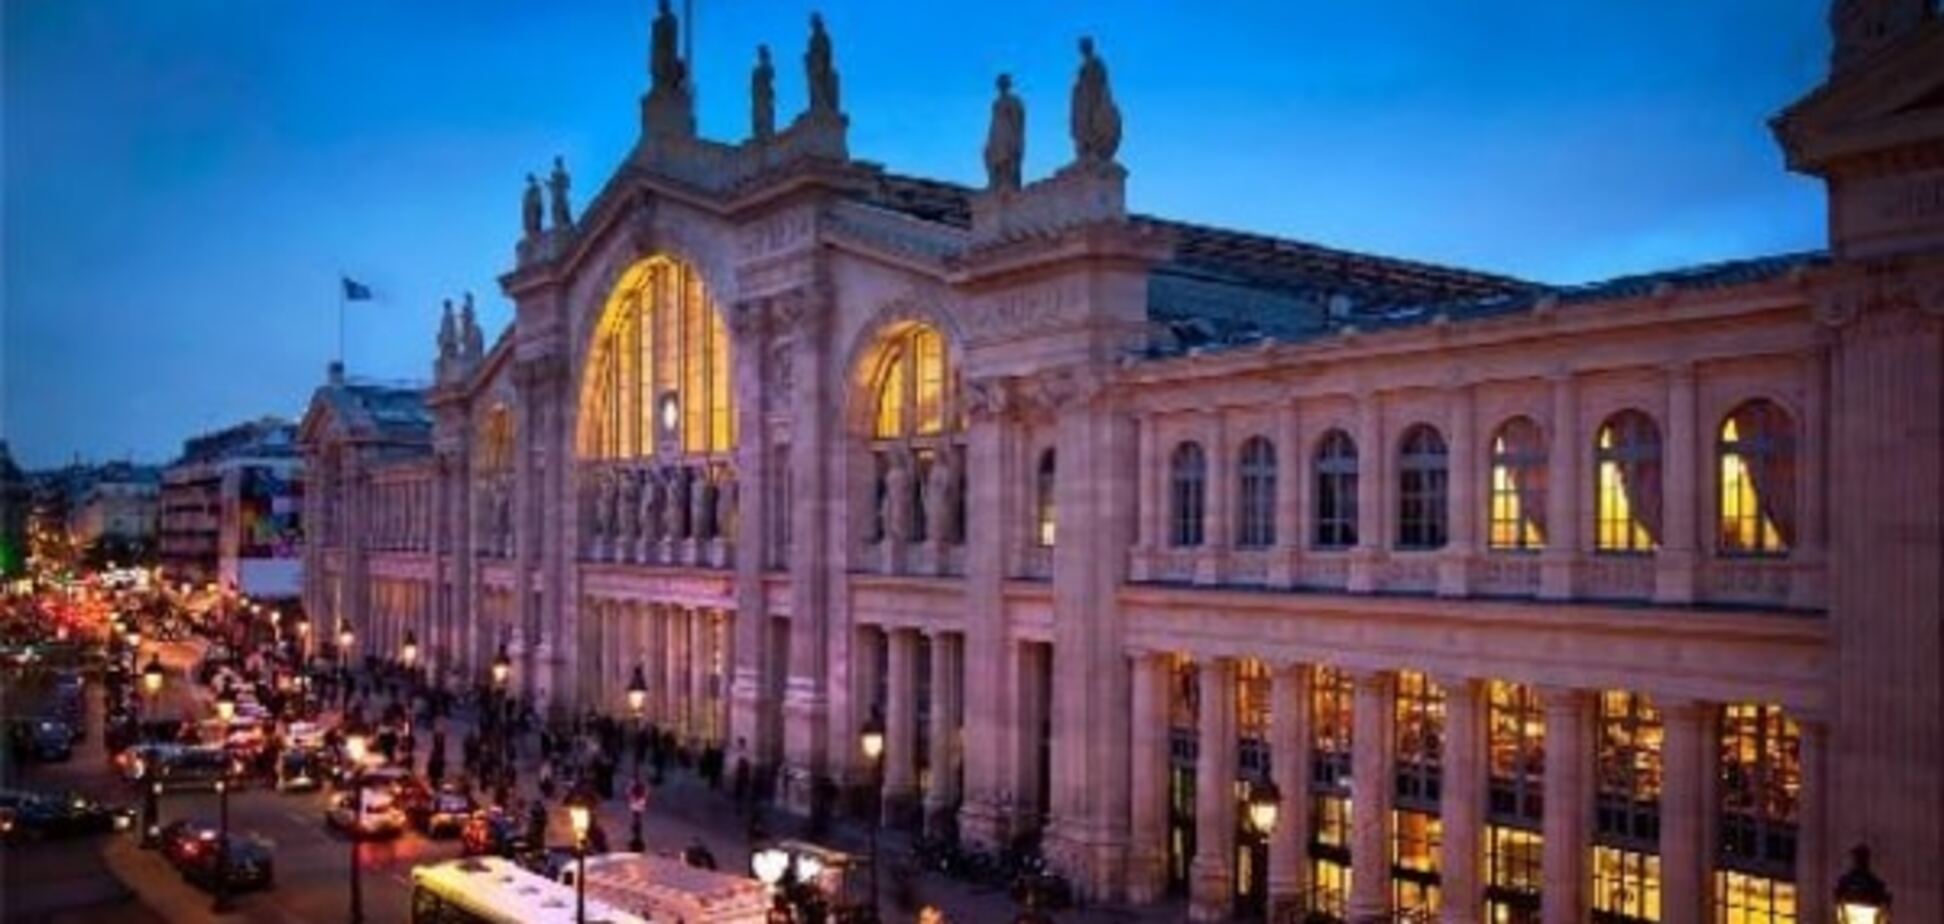 У страха глаза велики: вокзал в Париже эвакуировли из-за голубя